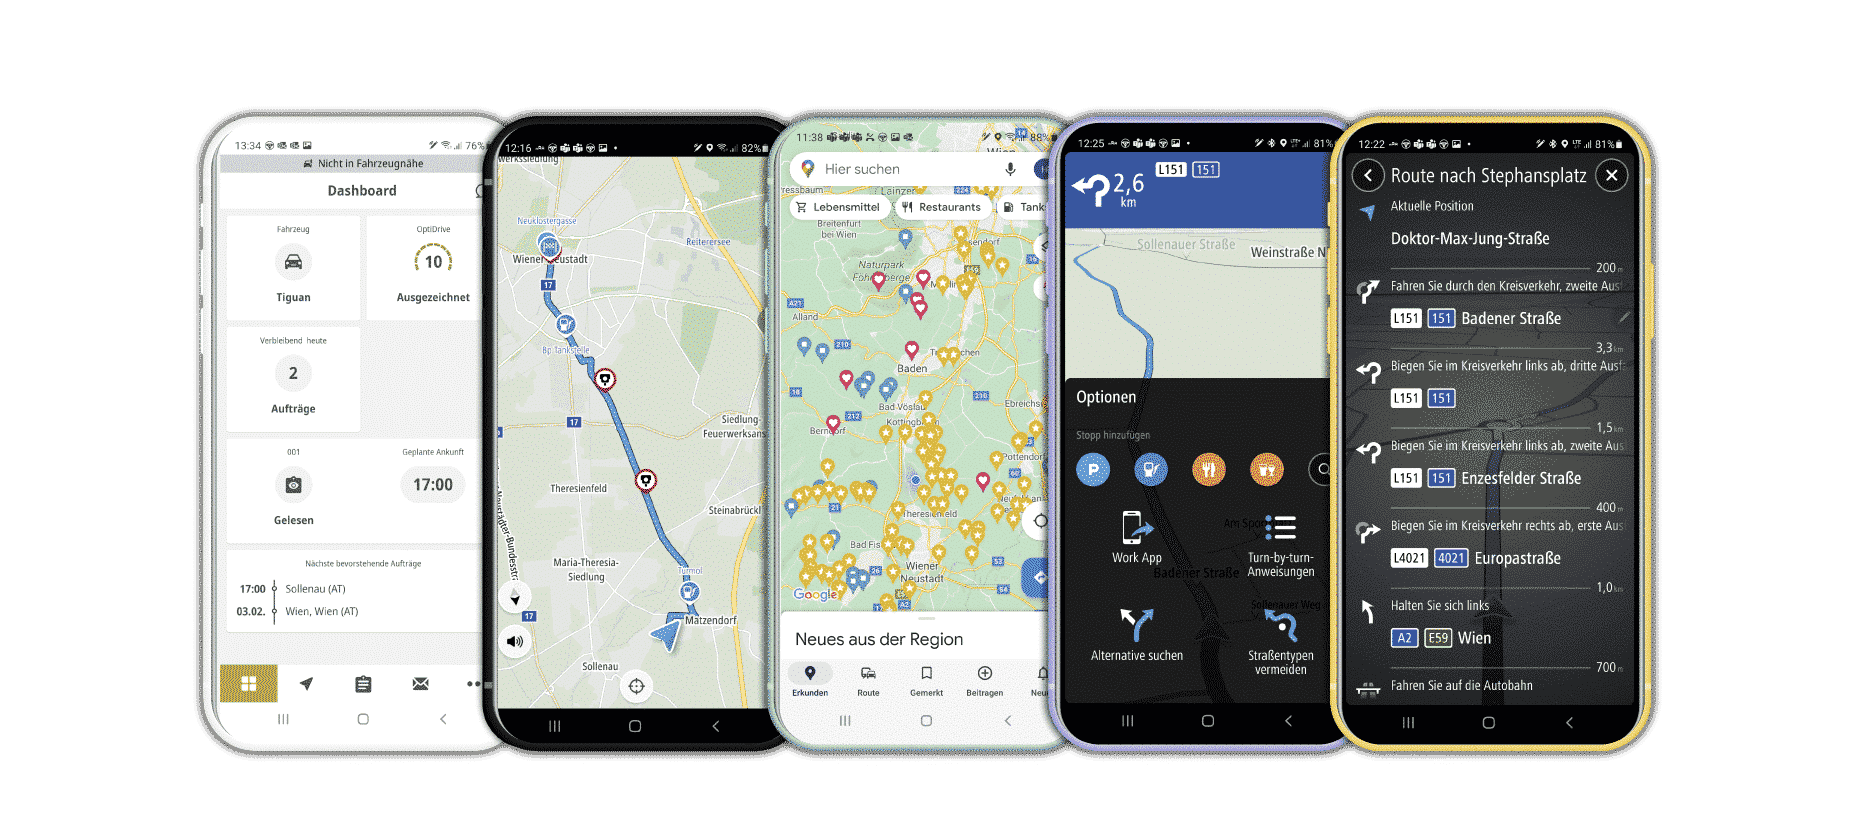 WEBFLEET Work App eine Smartphone-App für Fahrer*innen